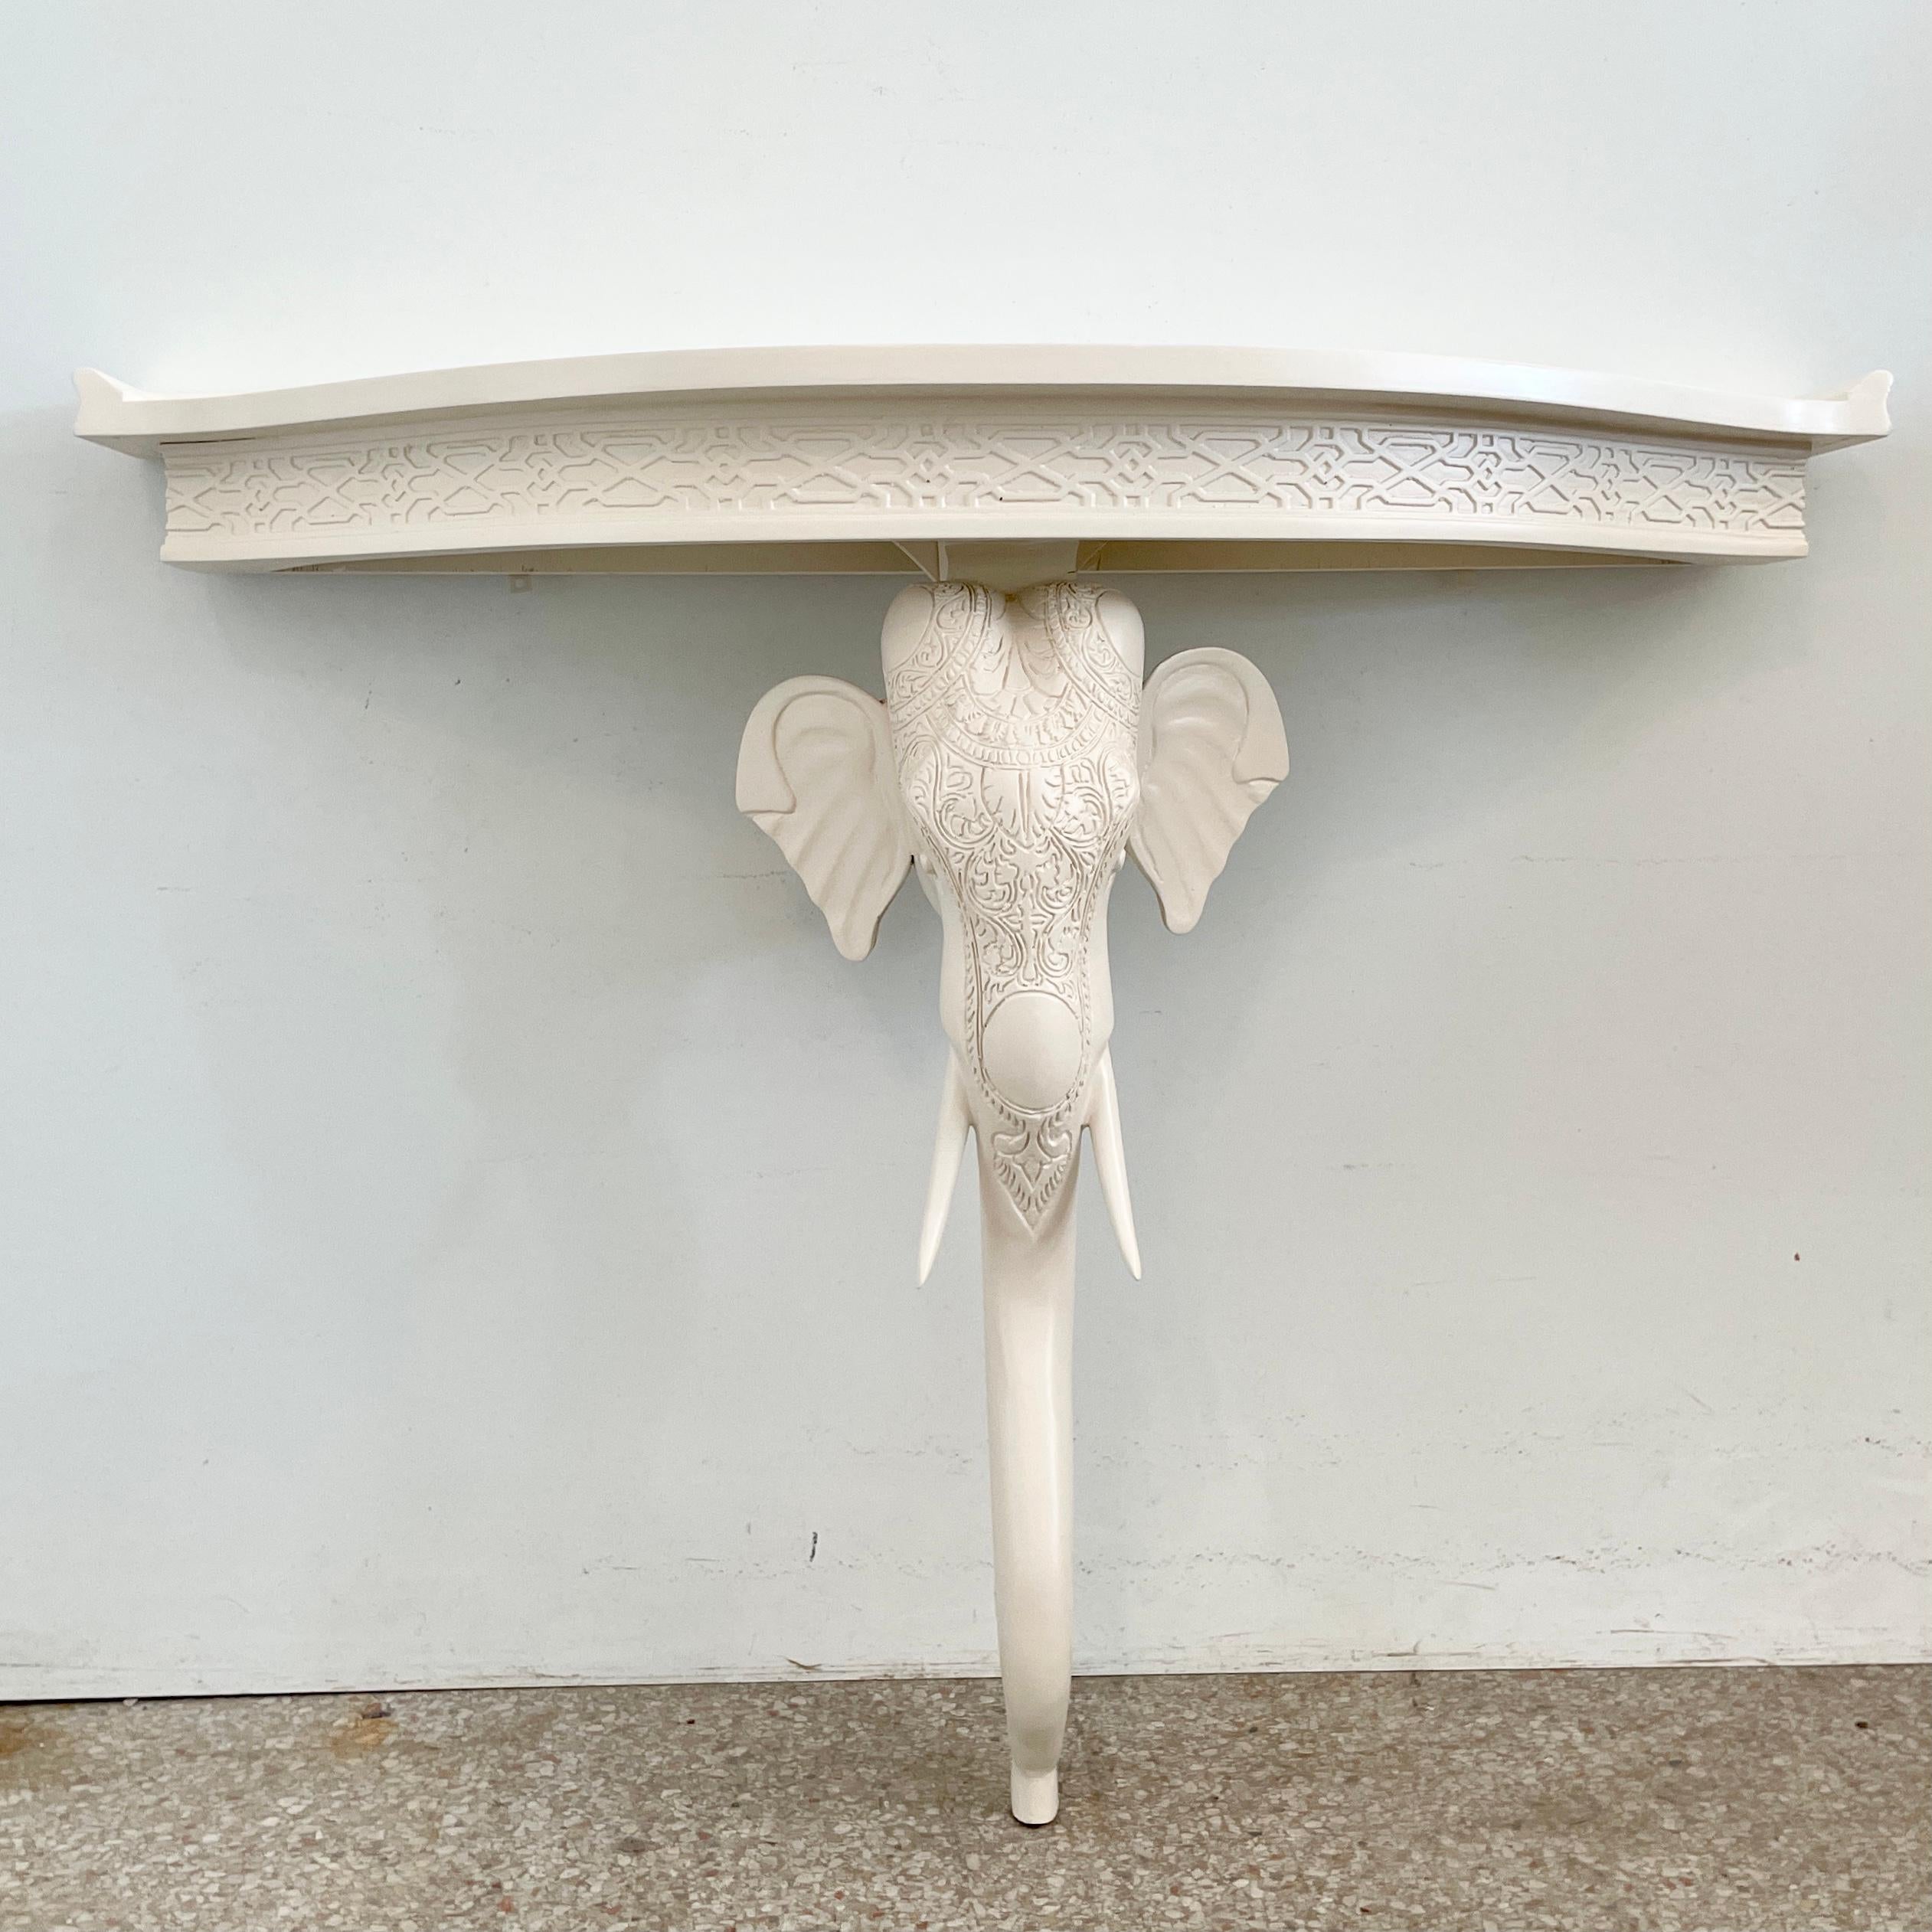 Magnifique console à éléphant en bois sculpté de Gampel-Stoll fraîchement laqué en ivoire. Des détails de sculpture étonnants. Un complément idéal pour vos intérieurs d'inspiration Boho Chic.